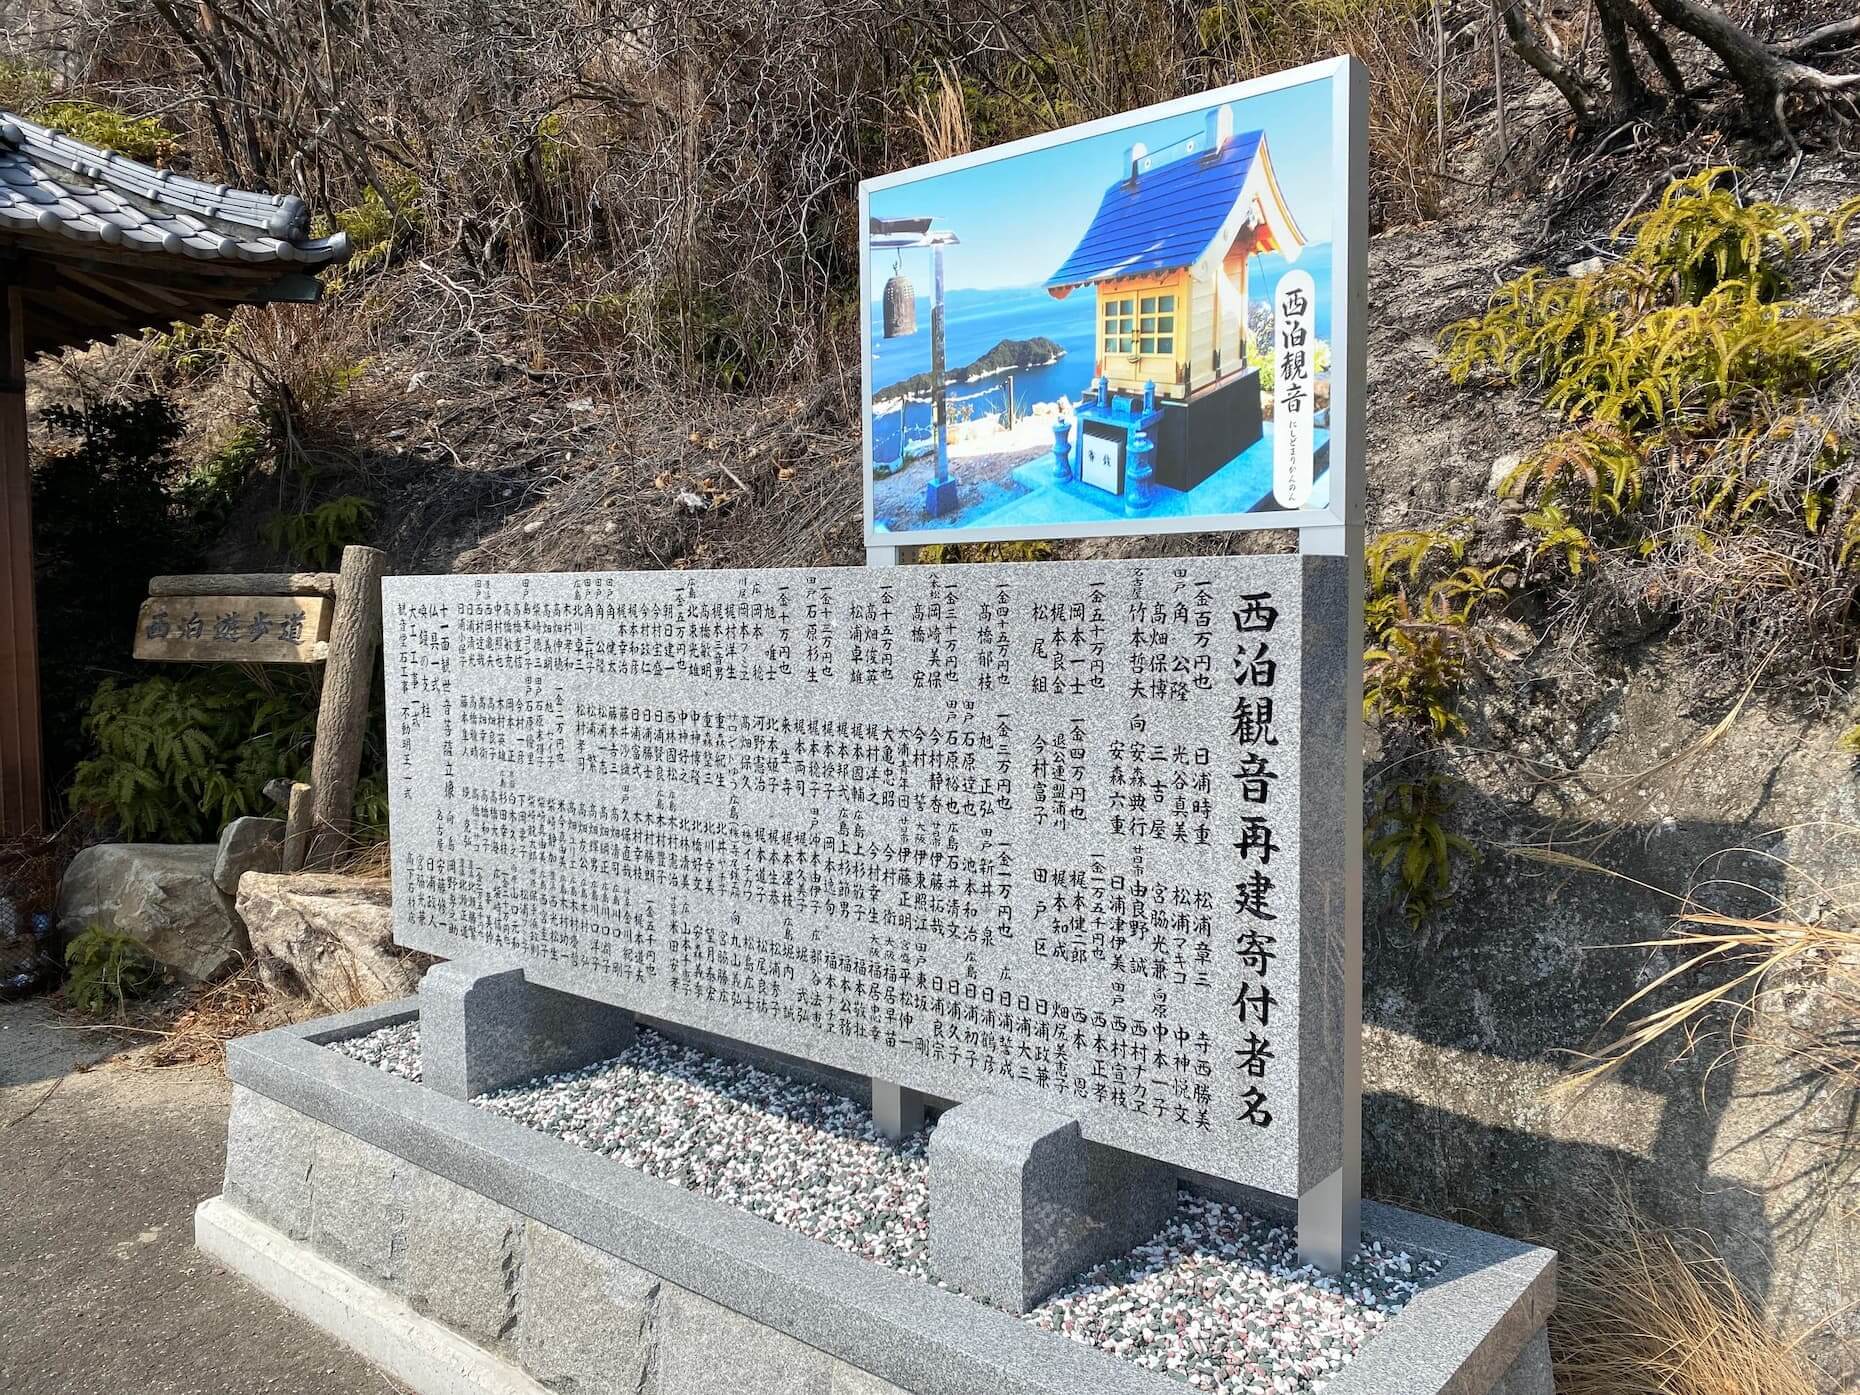 西泊観音堂の再建に協力した人の名を刻した石碑